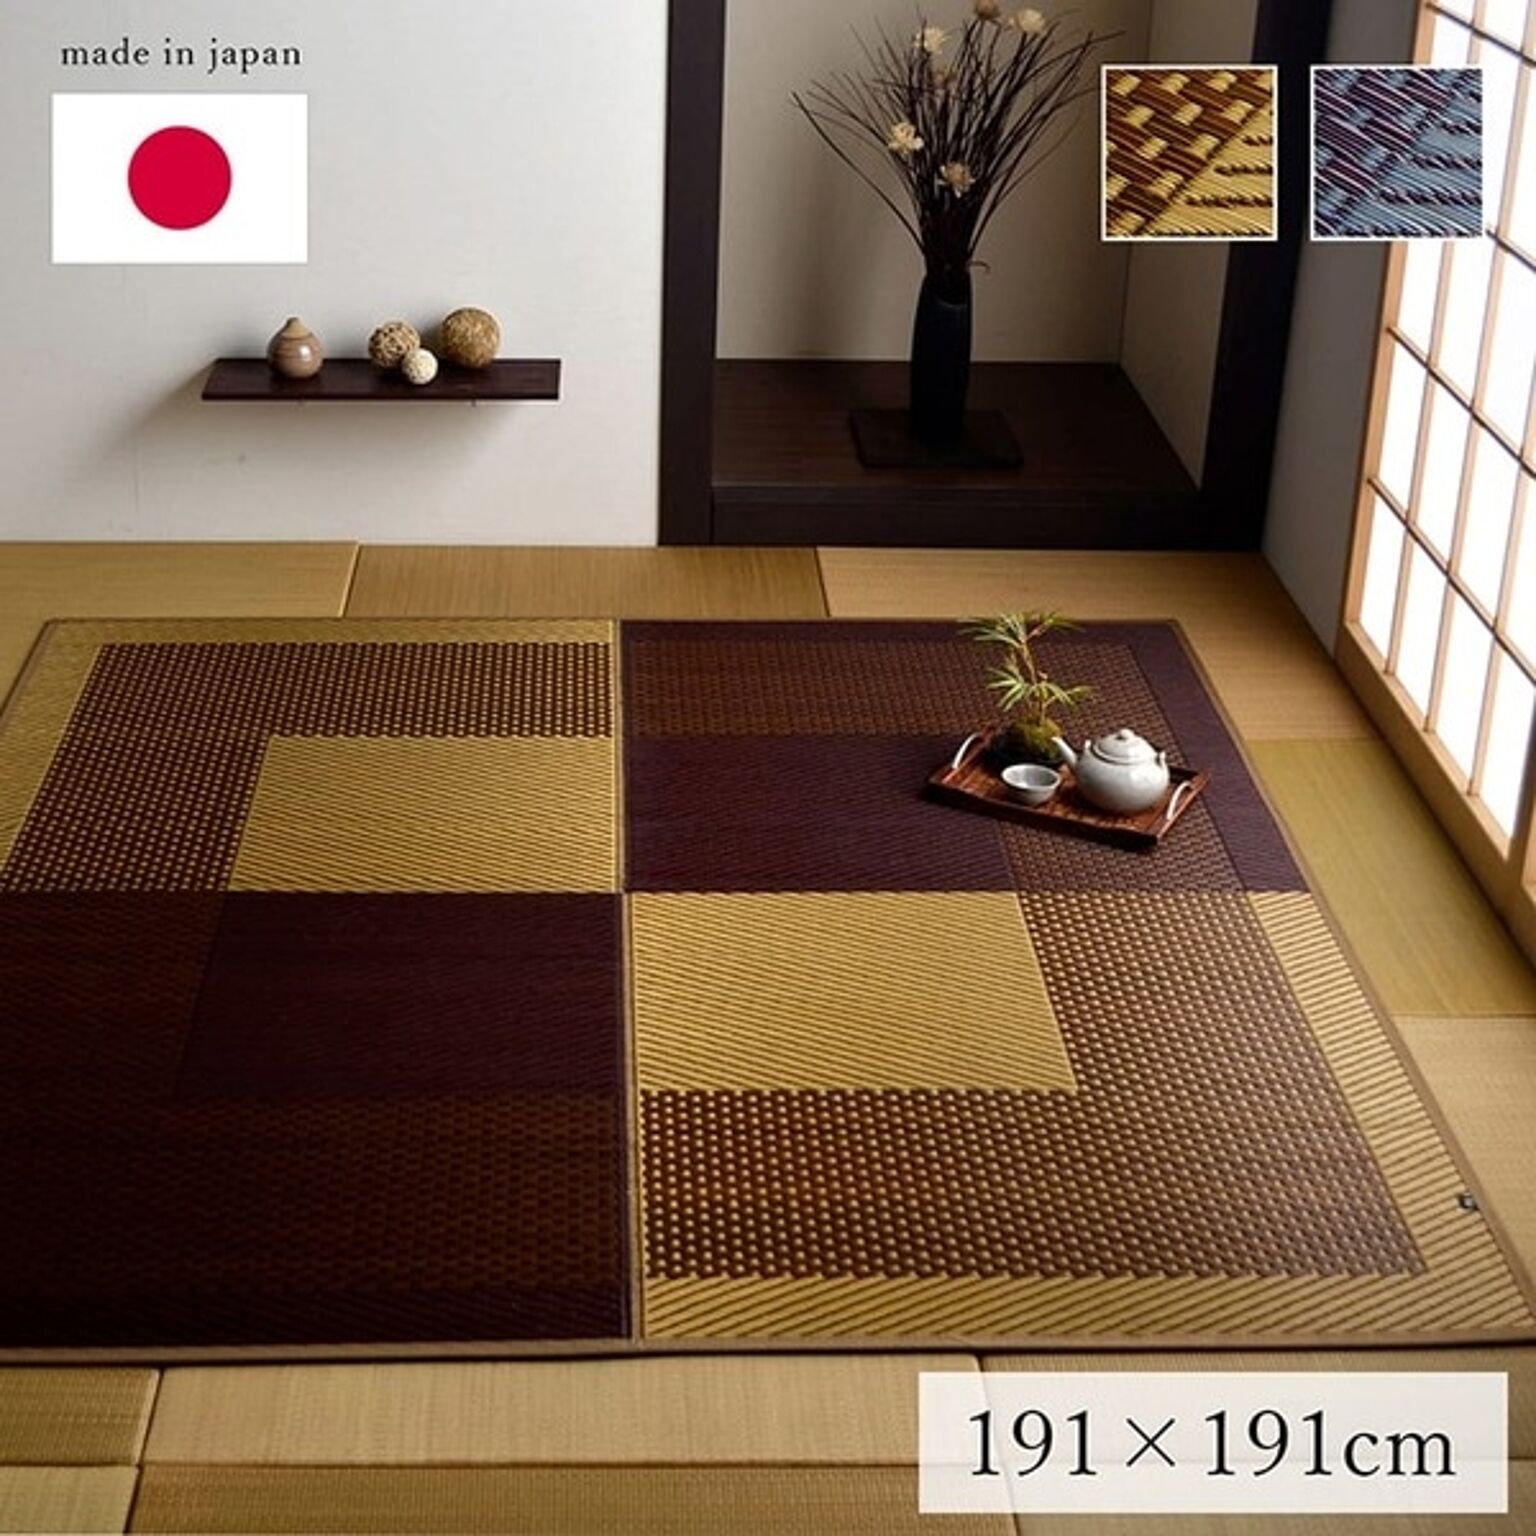 日本製 い草 ラグマット ベージュ 191×191cm 正方形 抗菌 防臭 湿度調節 耐久性